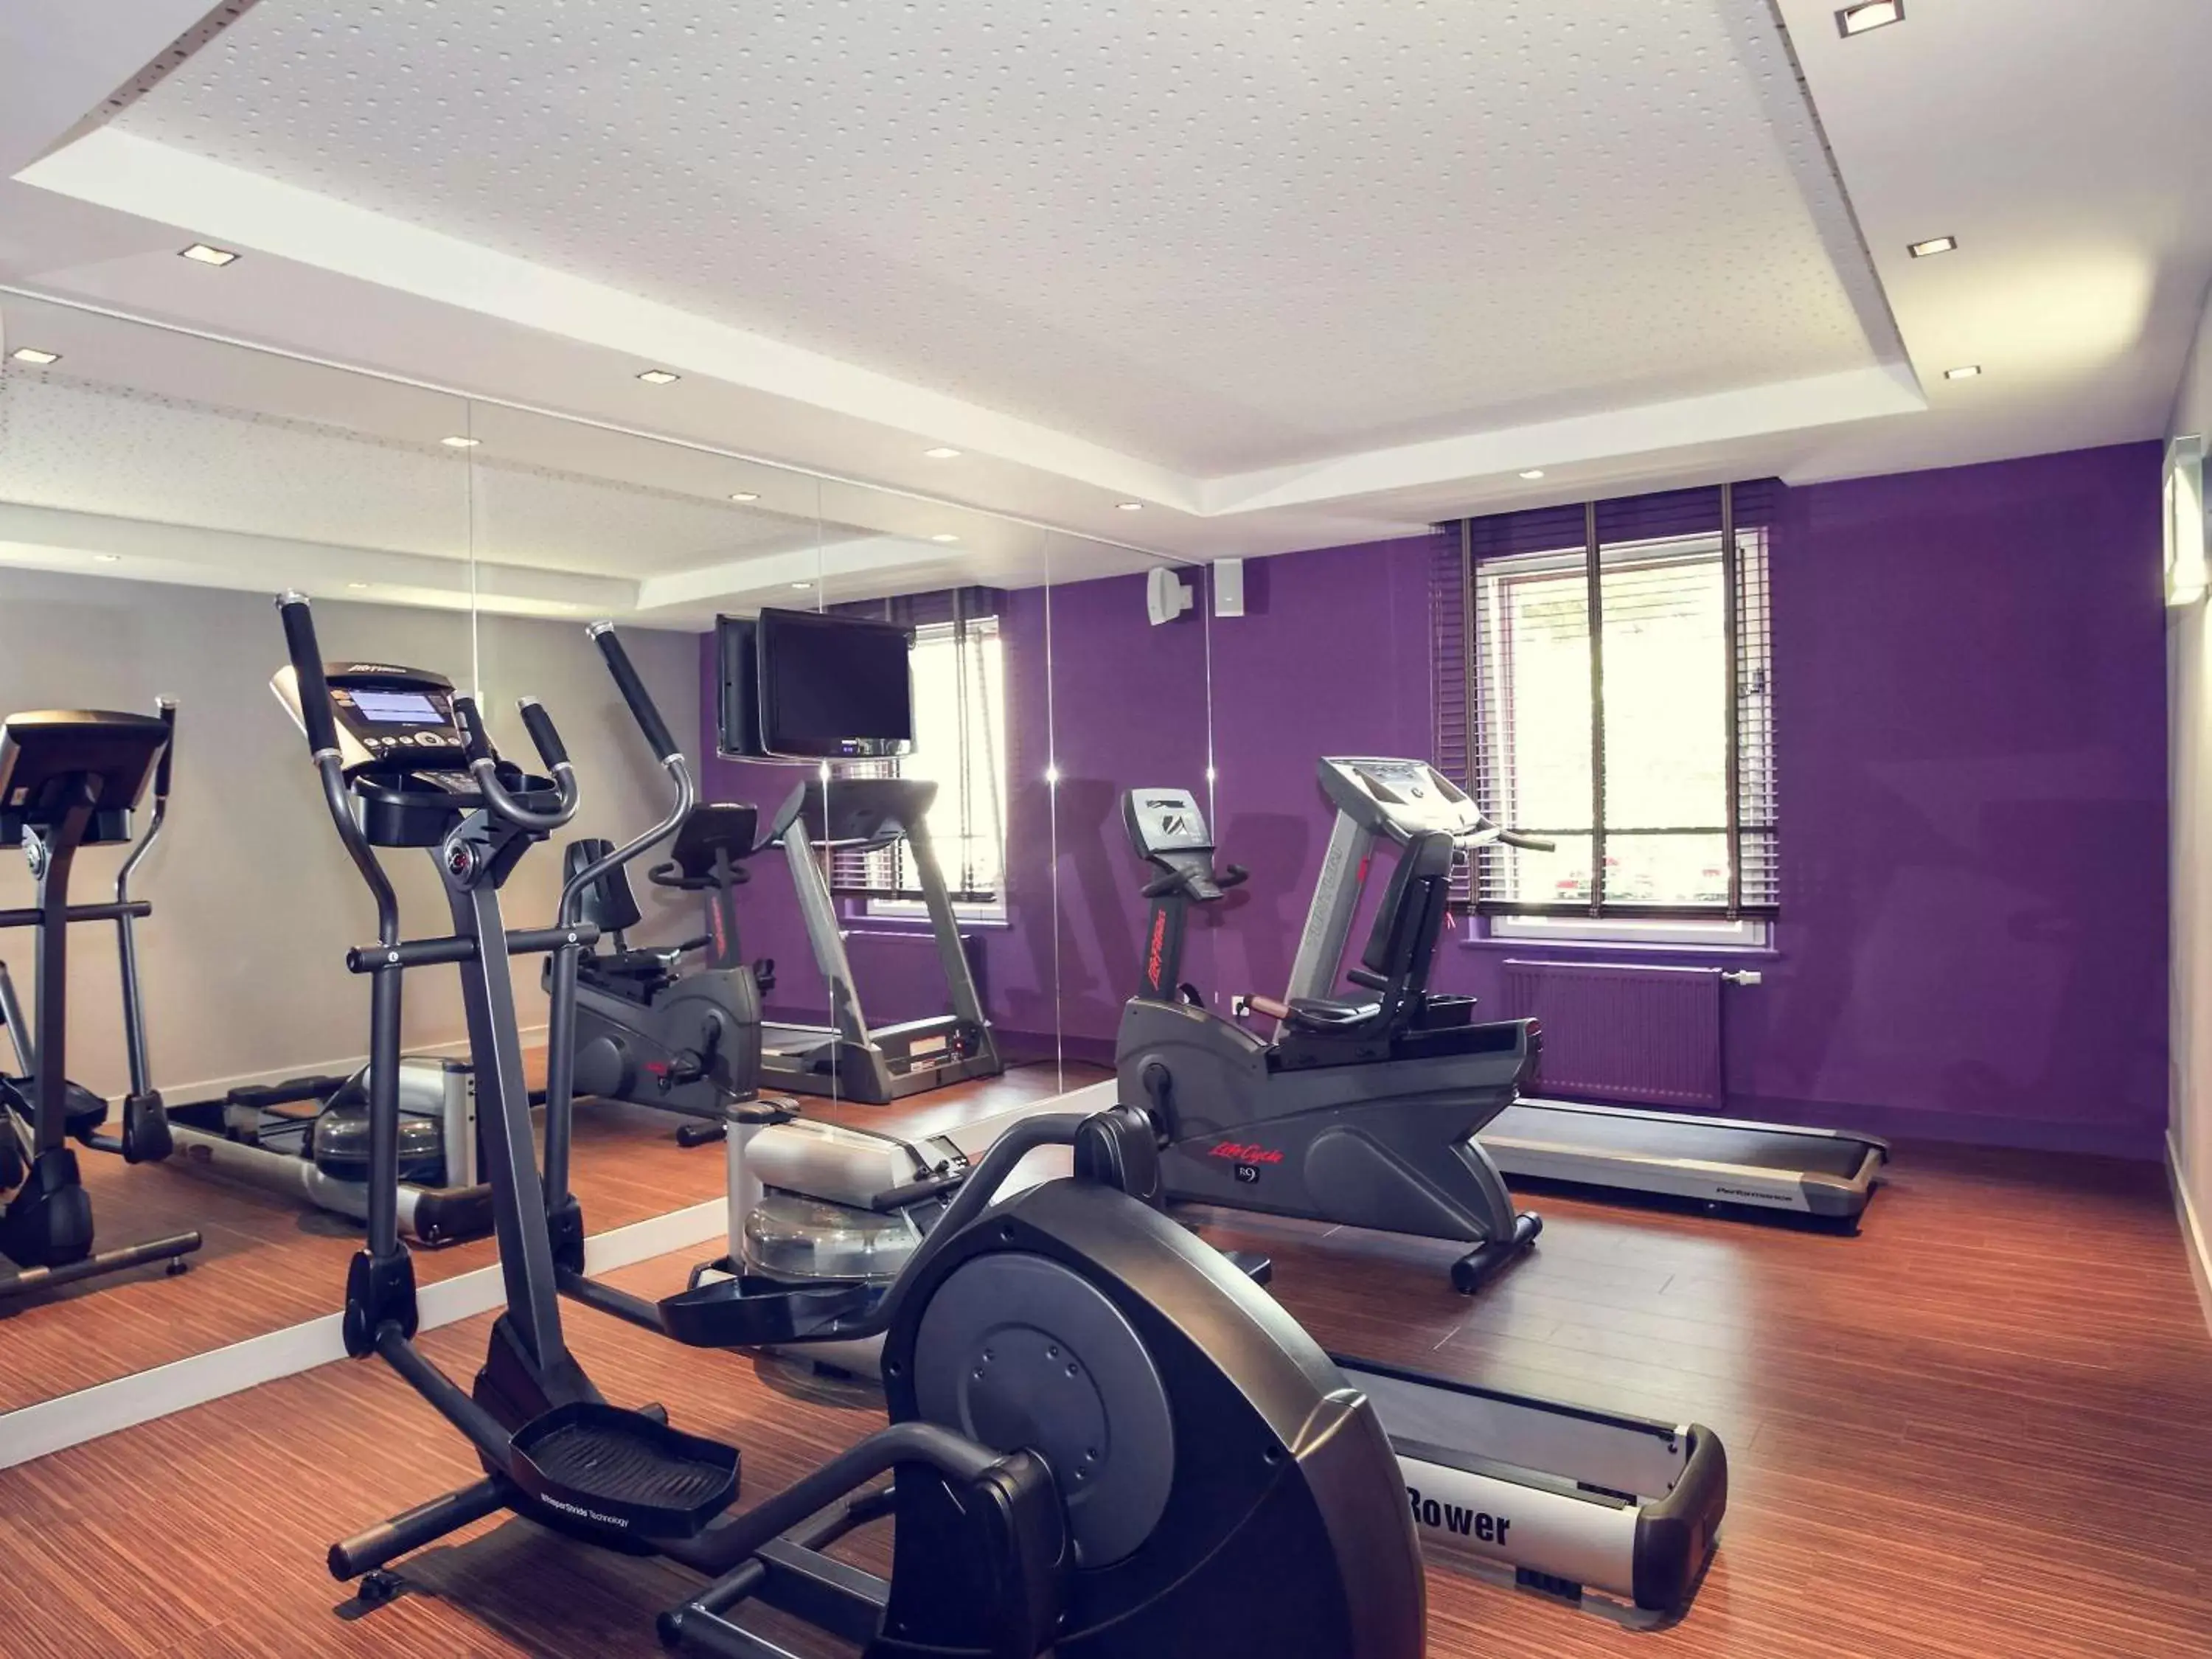 Fitness centre/facilities, Fitness Center/Facilities in Mercure Dinan Port Le Jerzual